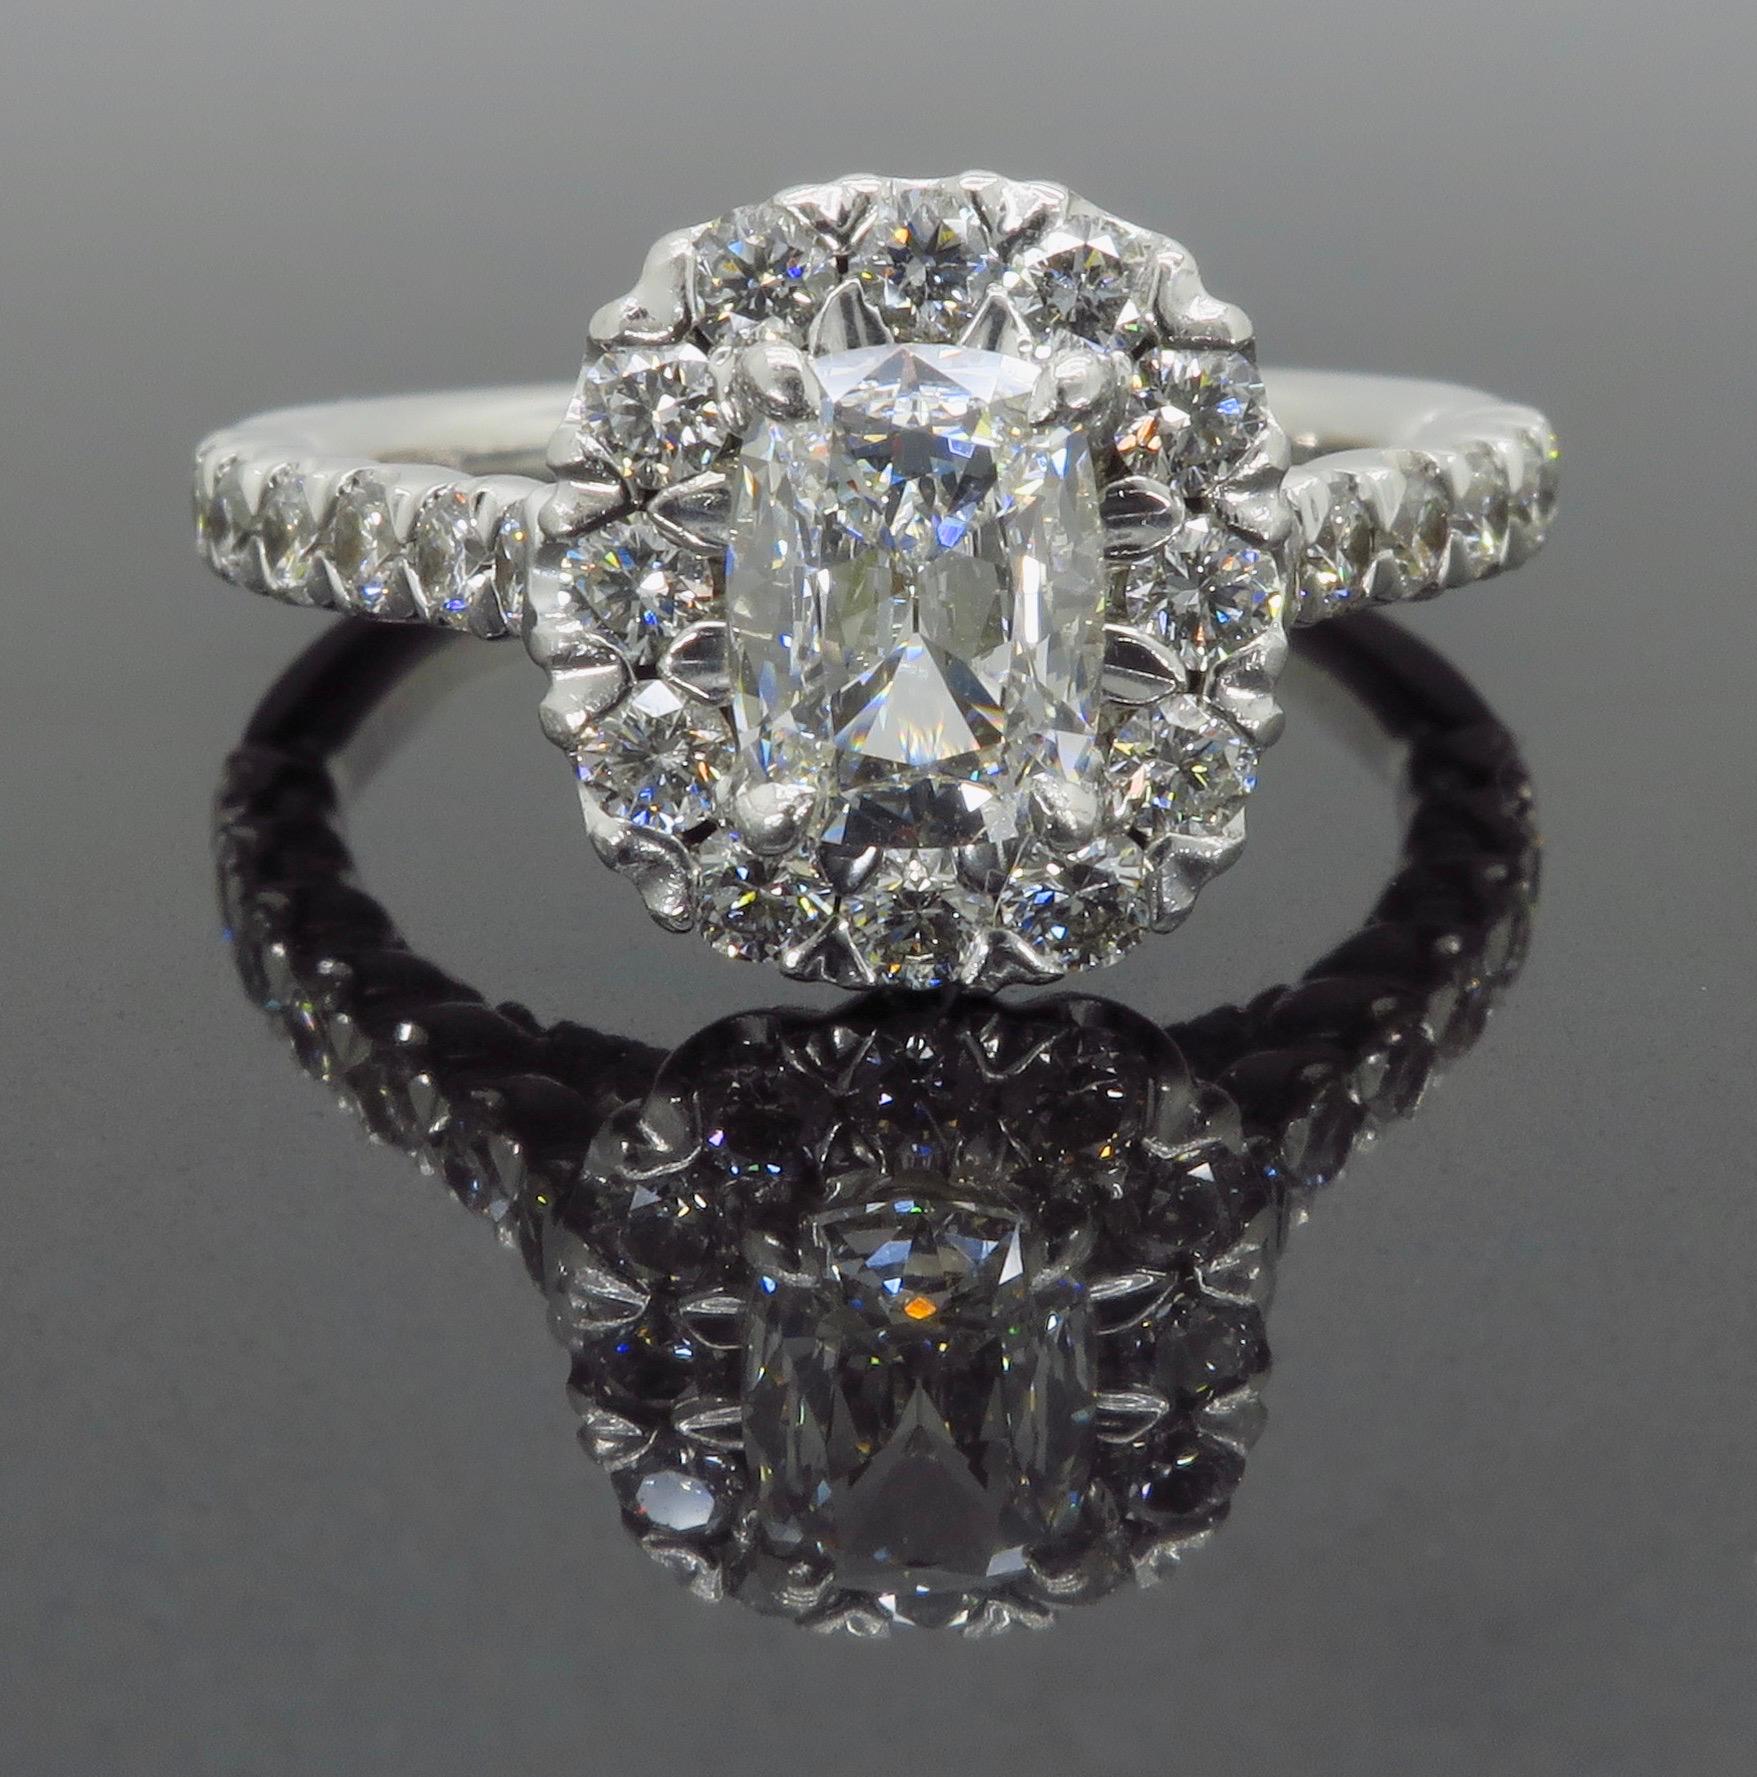 Henri Daussi Signature Halo Diamond Engagement Ring in 18 Karat White Gold 1